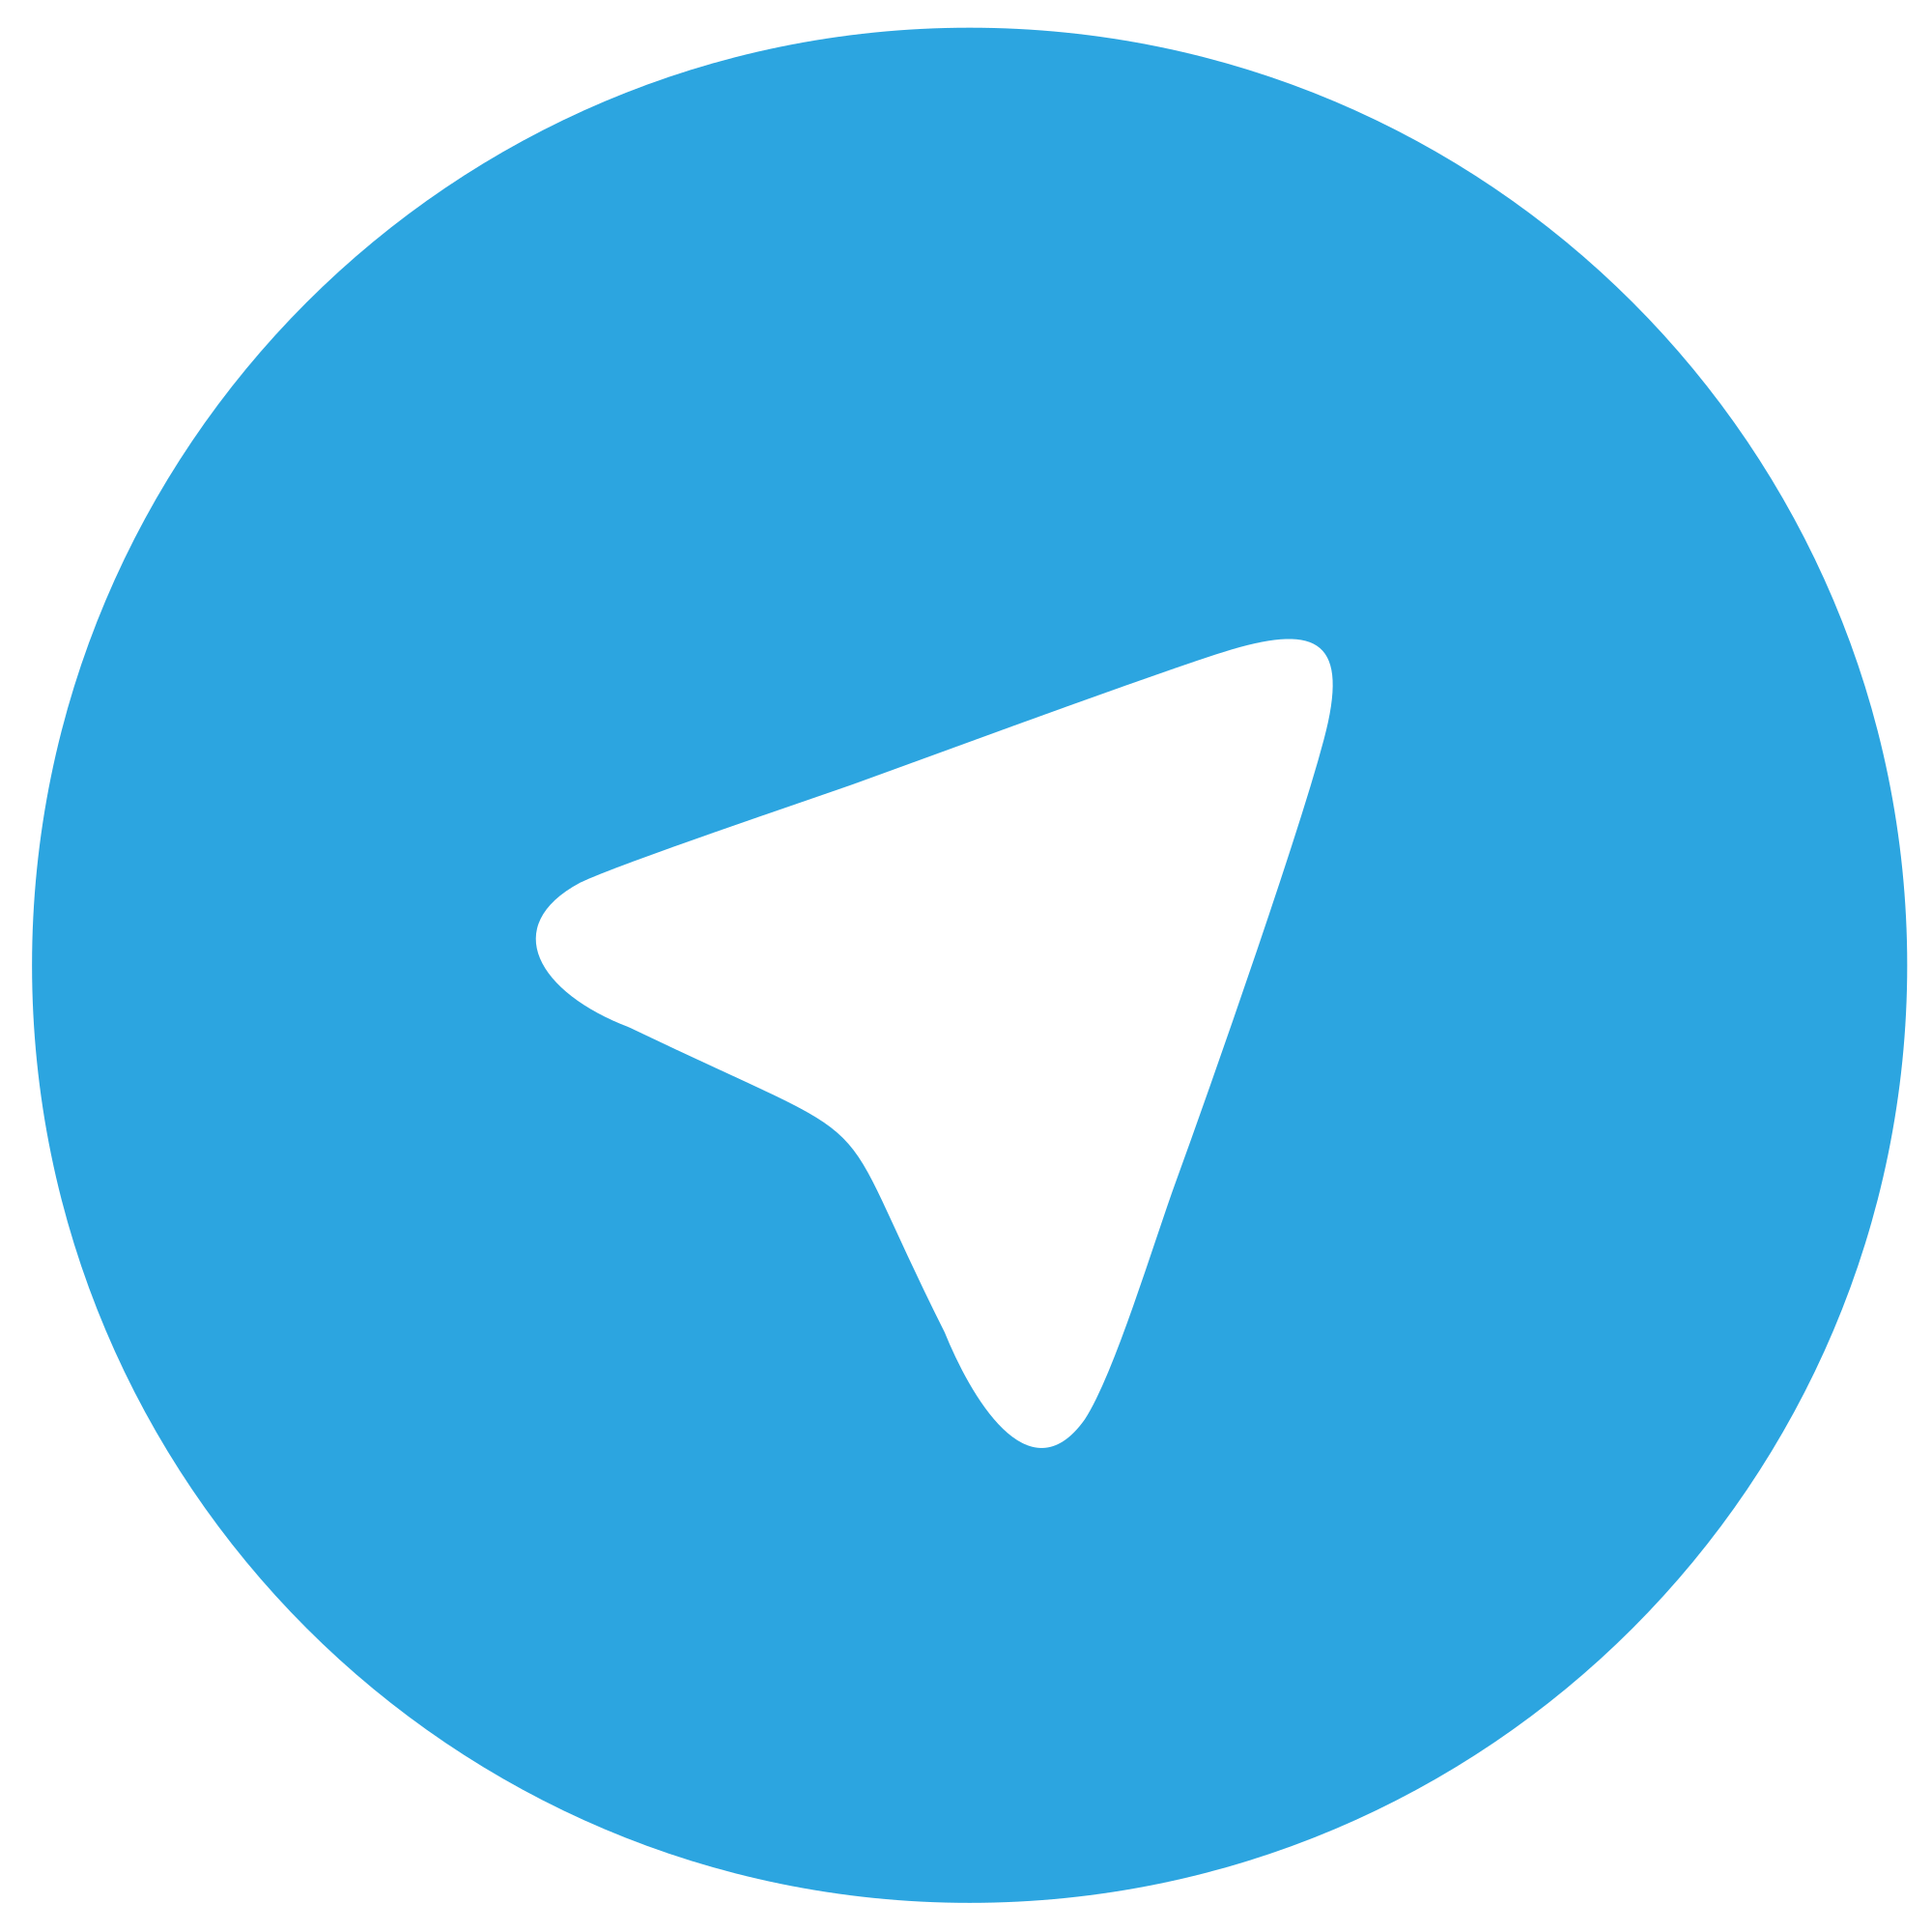 Logo telegram